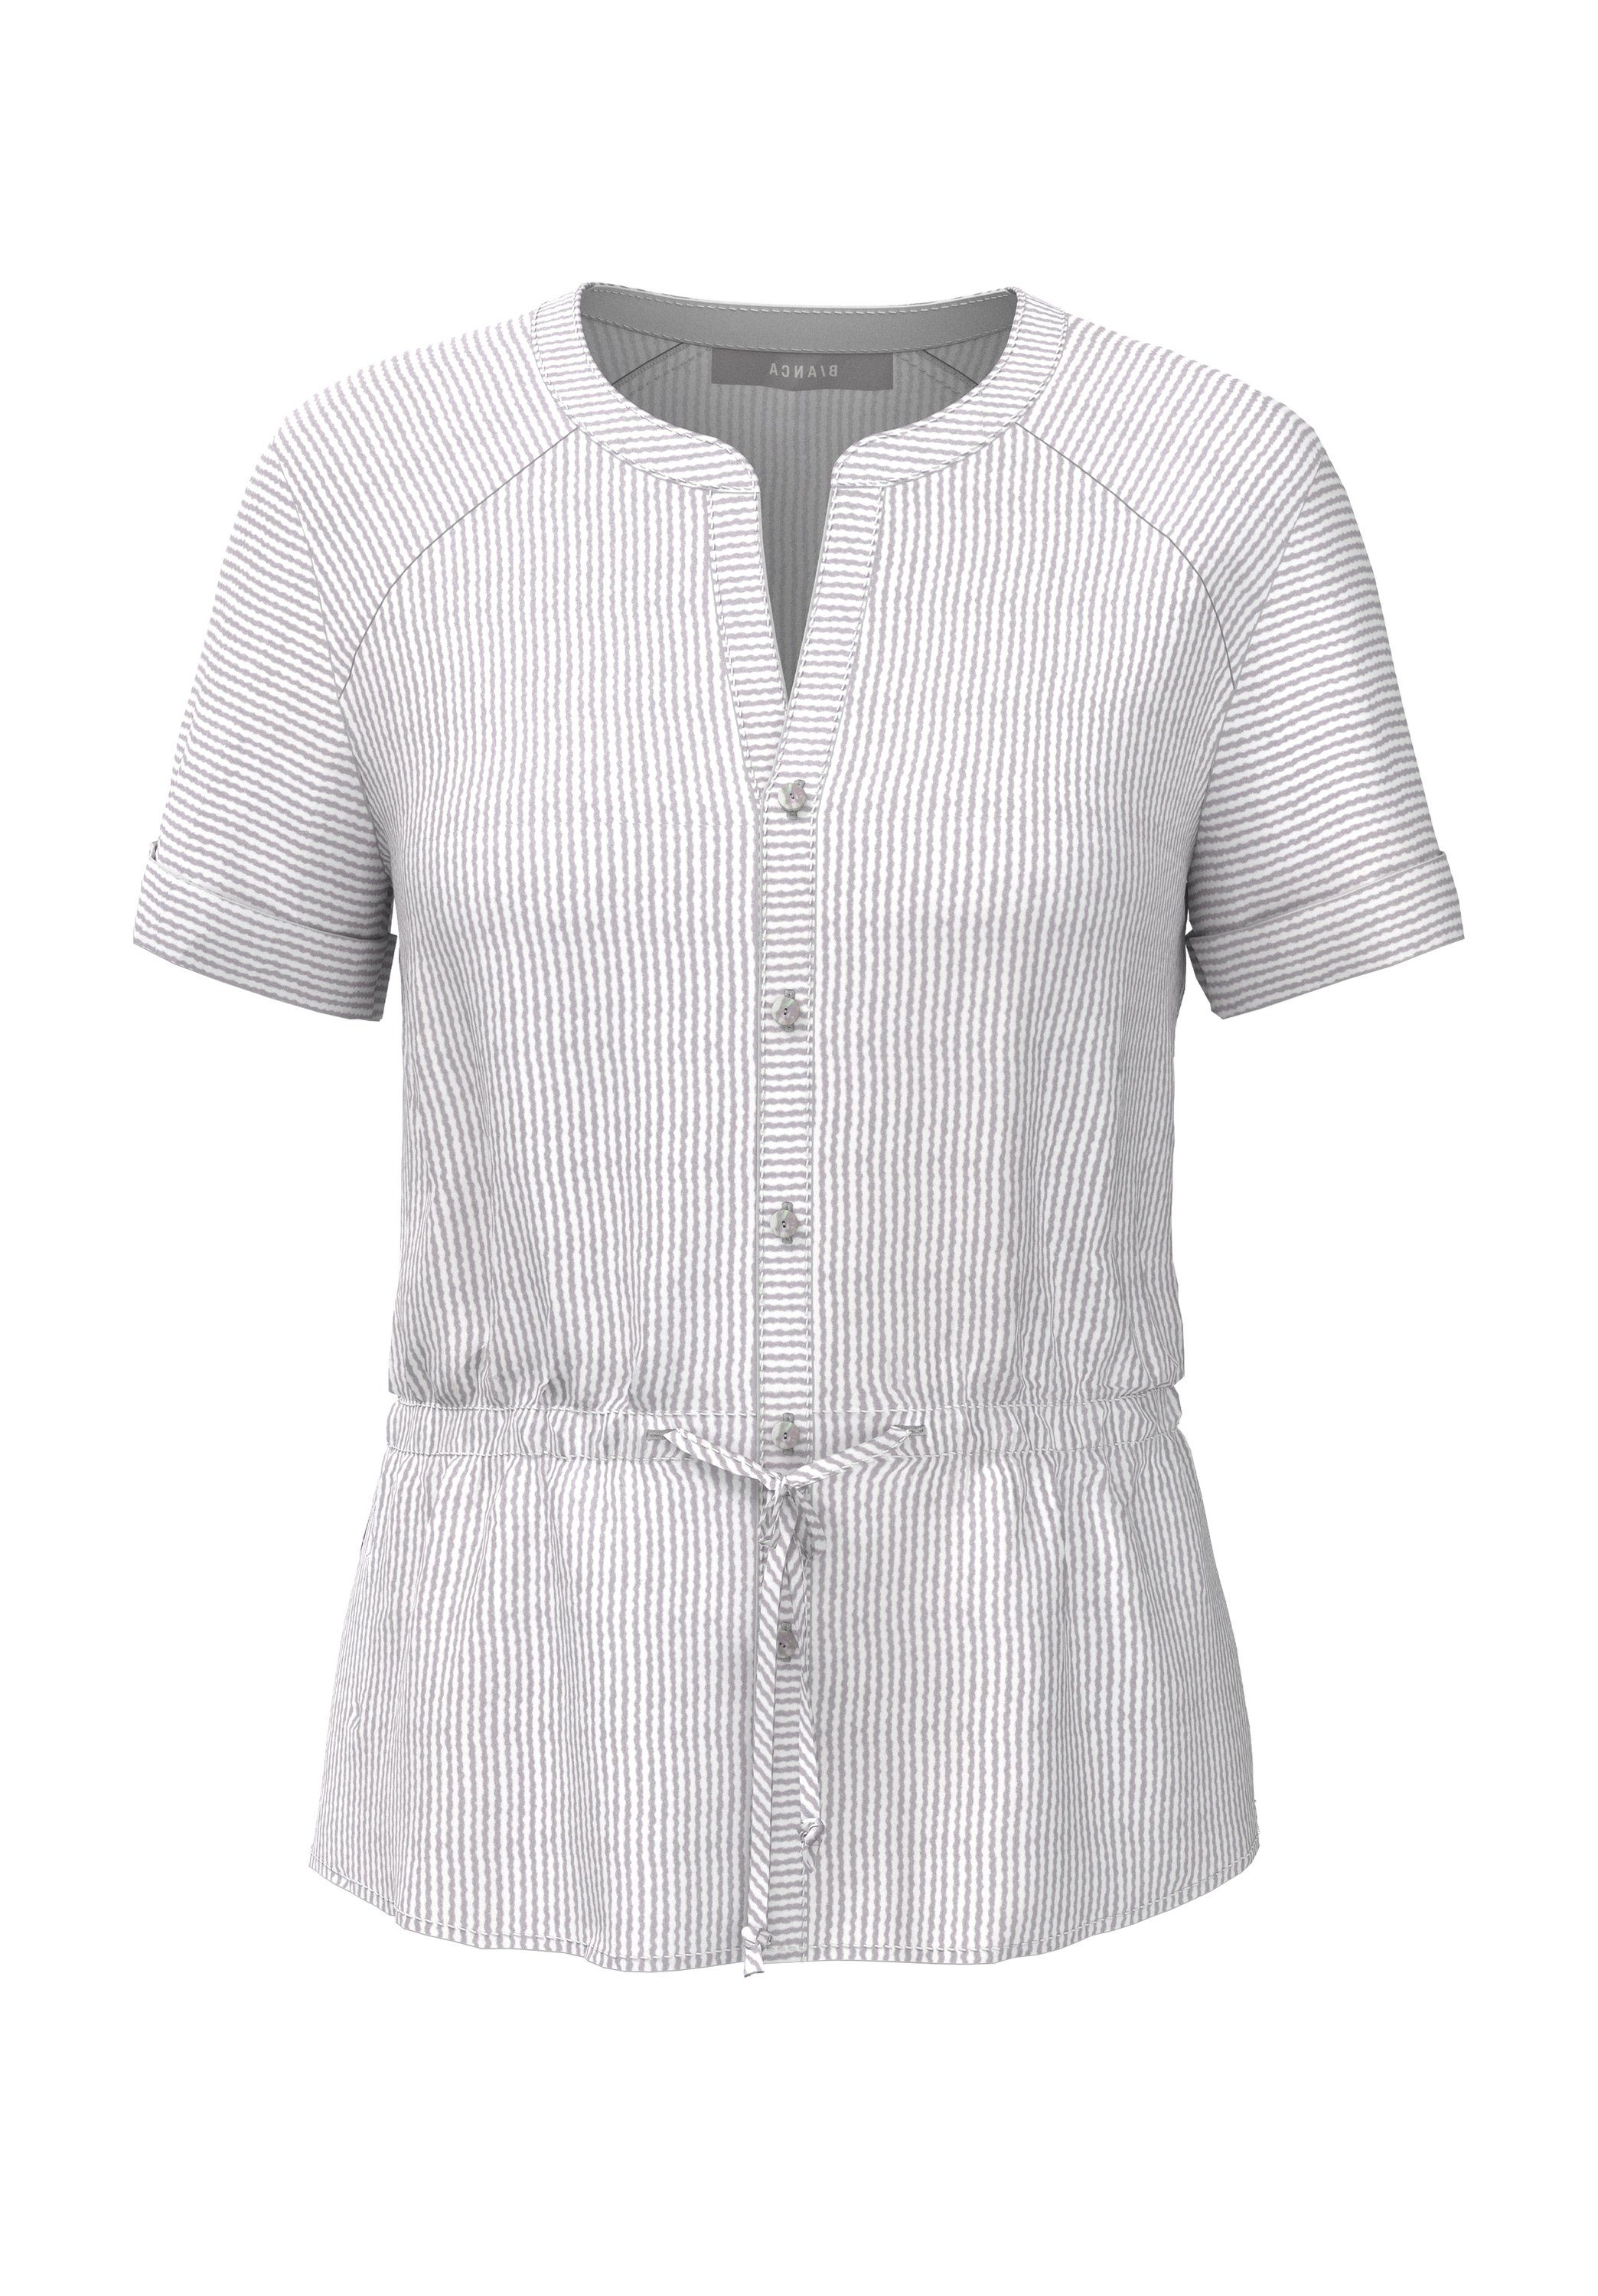 Damen Shirts bianca Kurzarmbluse ALICIA im angesagten Streifendesign und Tunnelzug